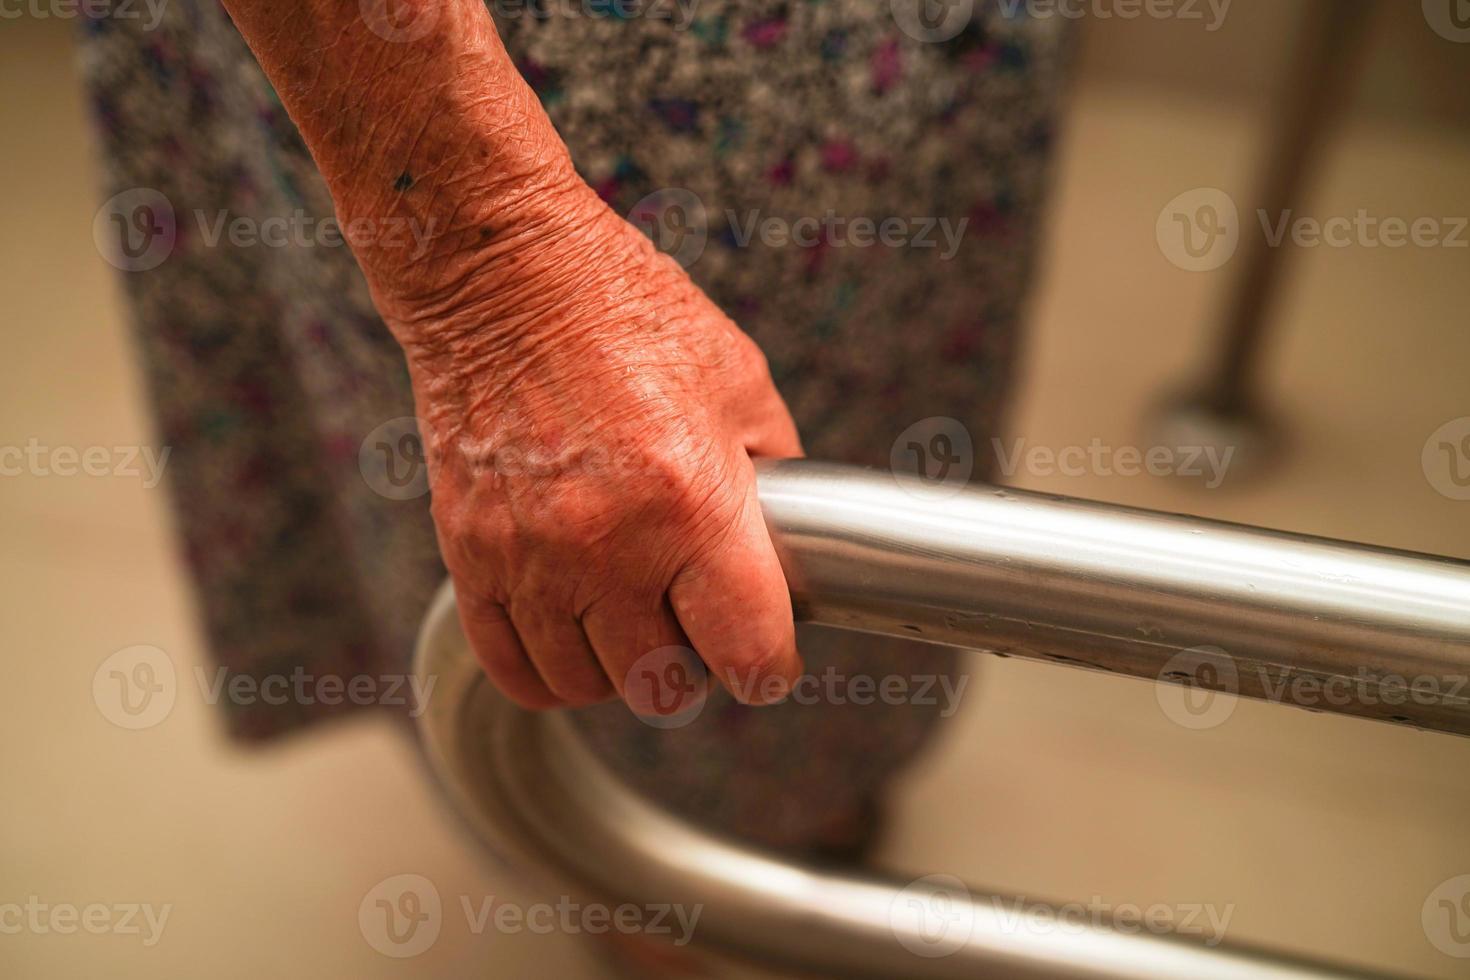 Aziatische bejaarde oude vrouw patiënt gebruik toilet steunrail in badkamer, leuning veiligheid handgreep, beveiliging in verpleegziekenhuis. foto